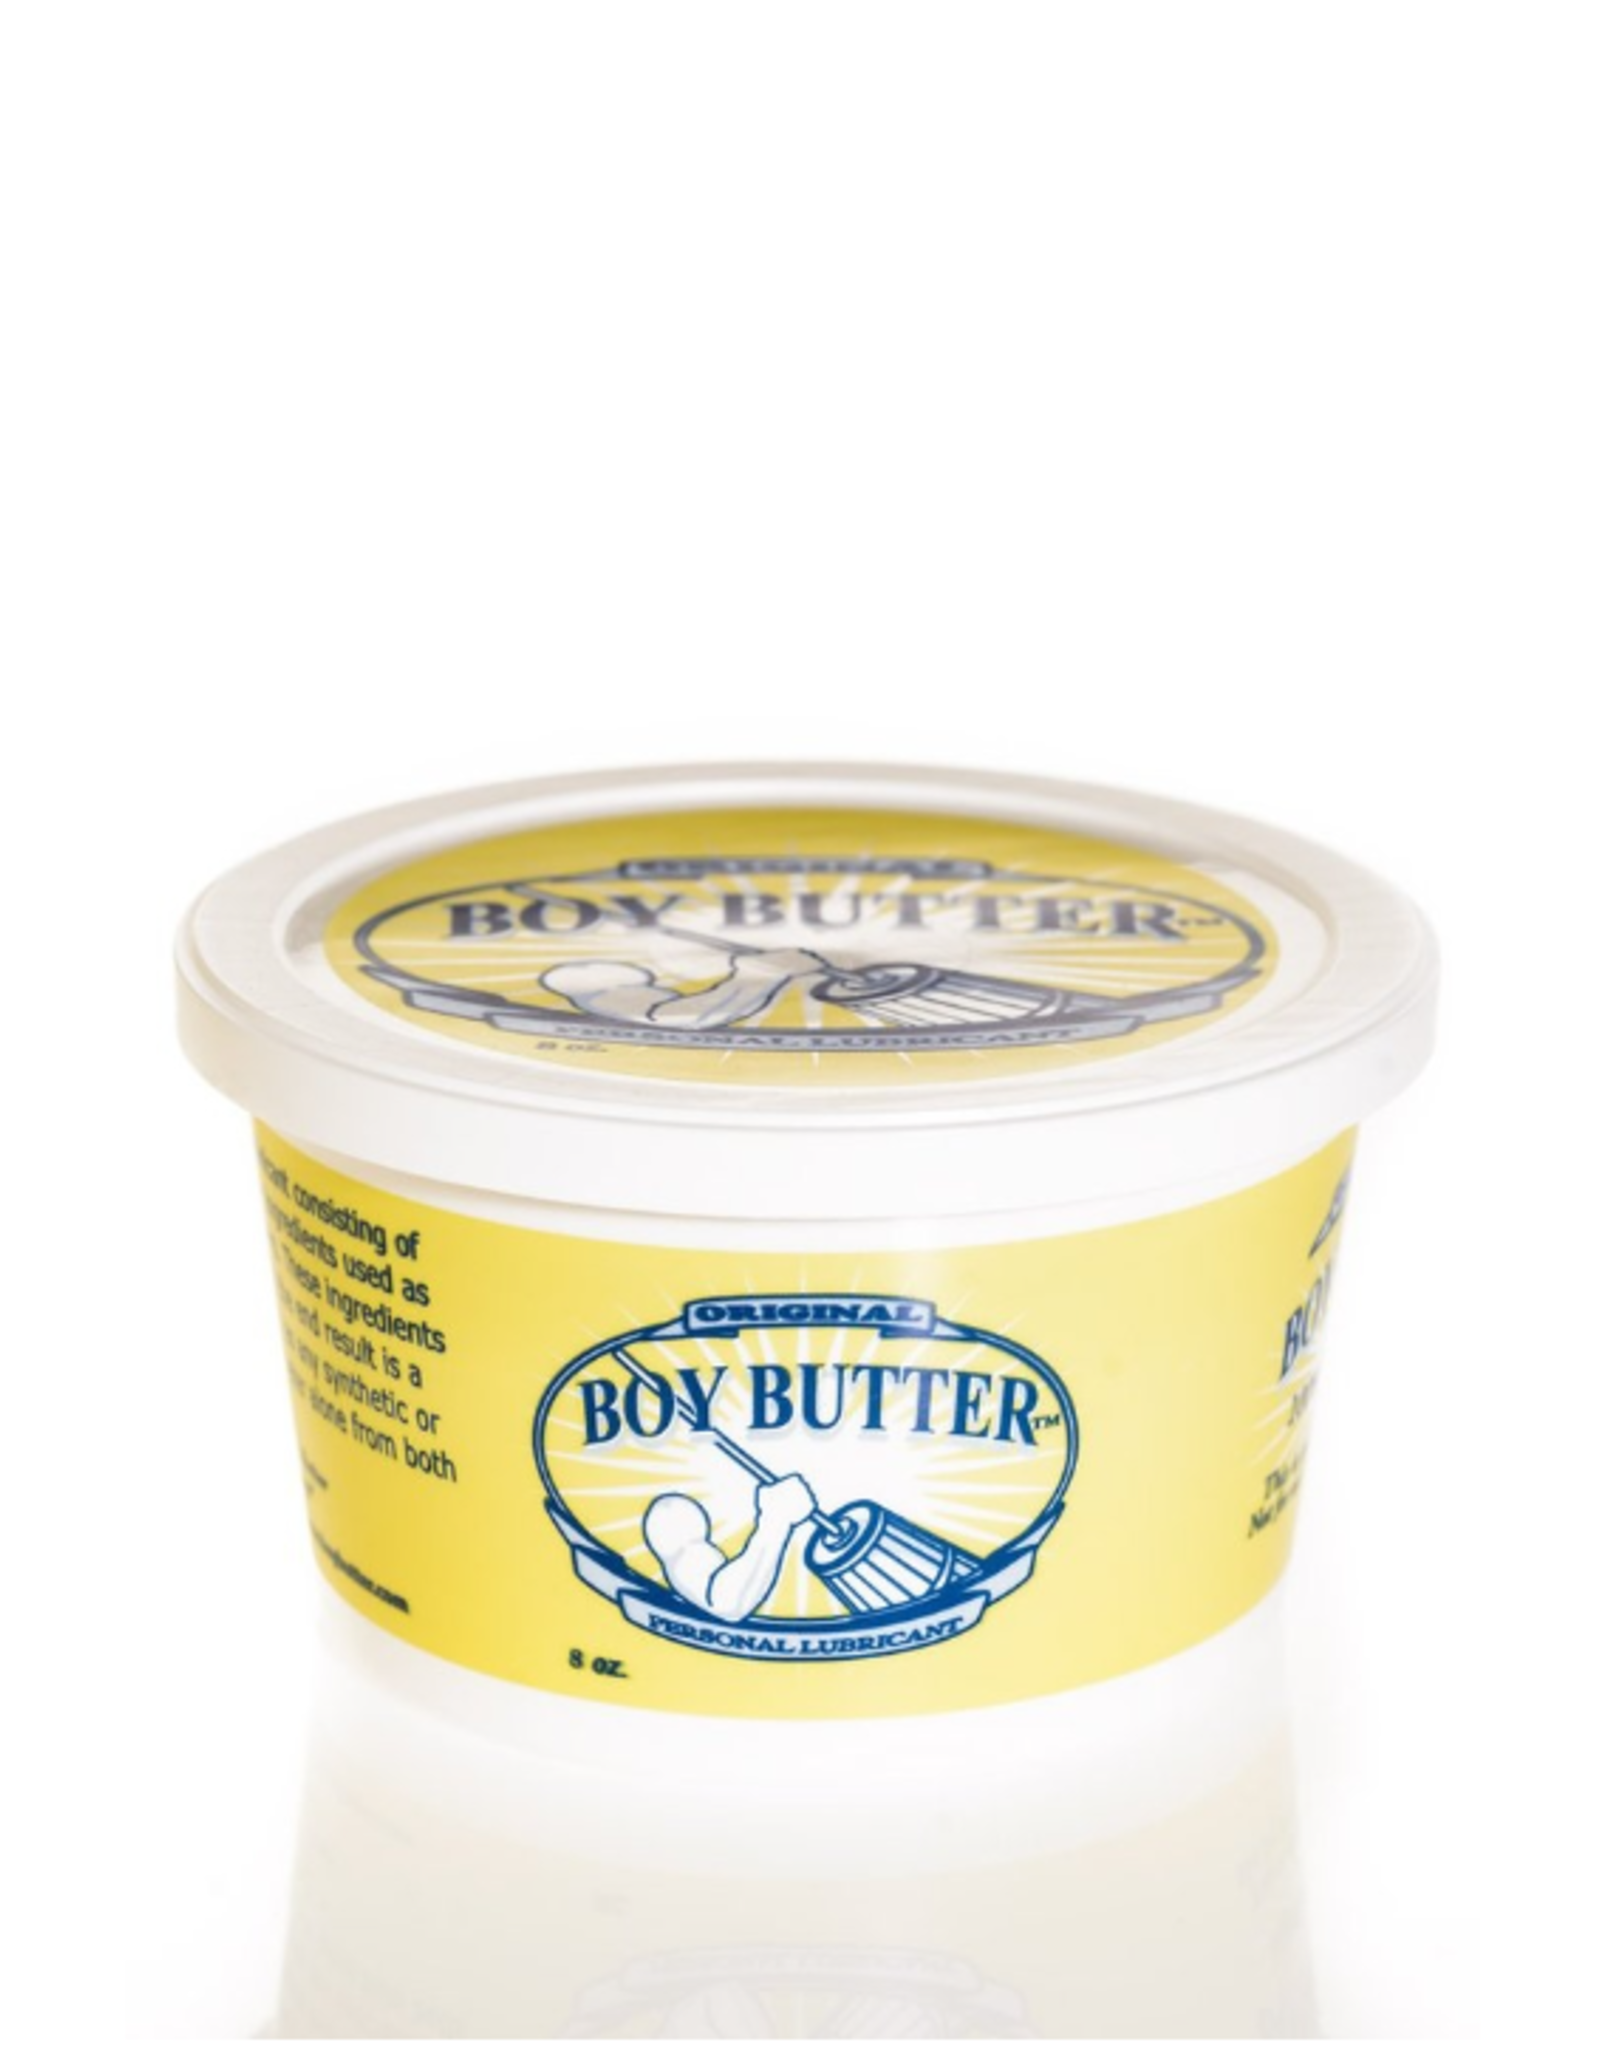 Boy Butter Boy Butter Original - 8 oz Tub